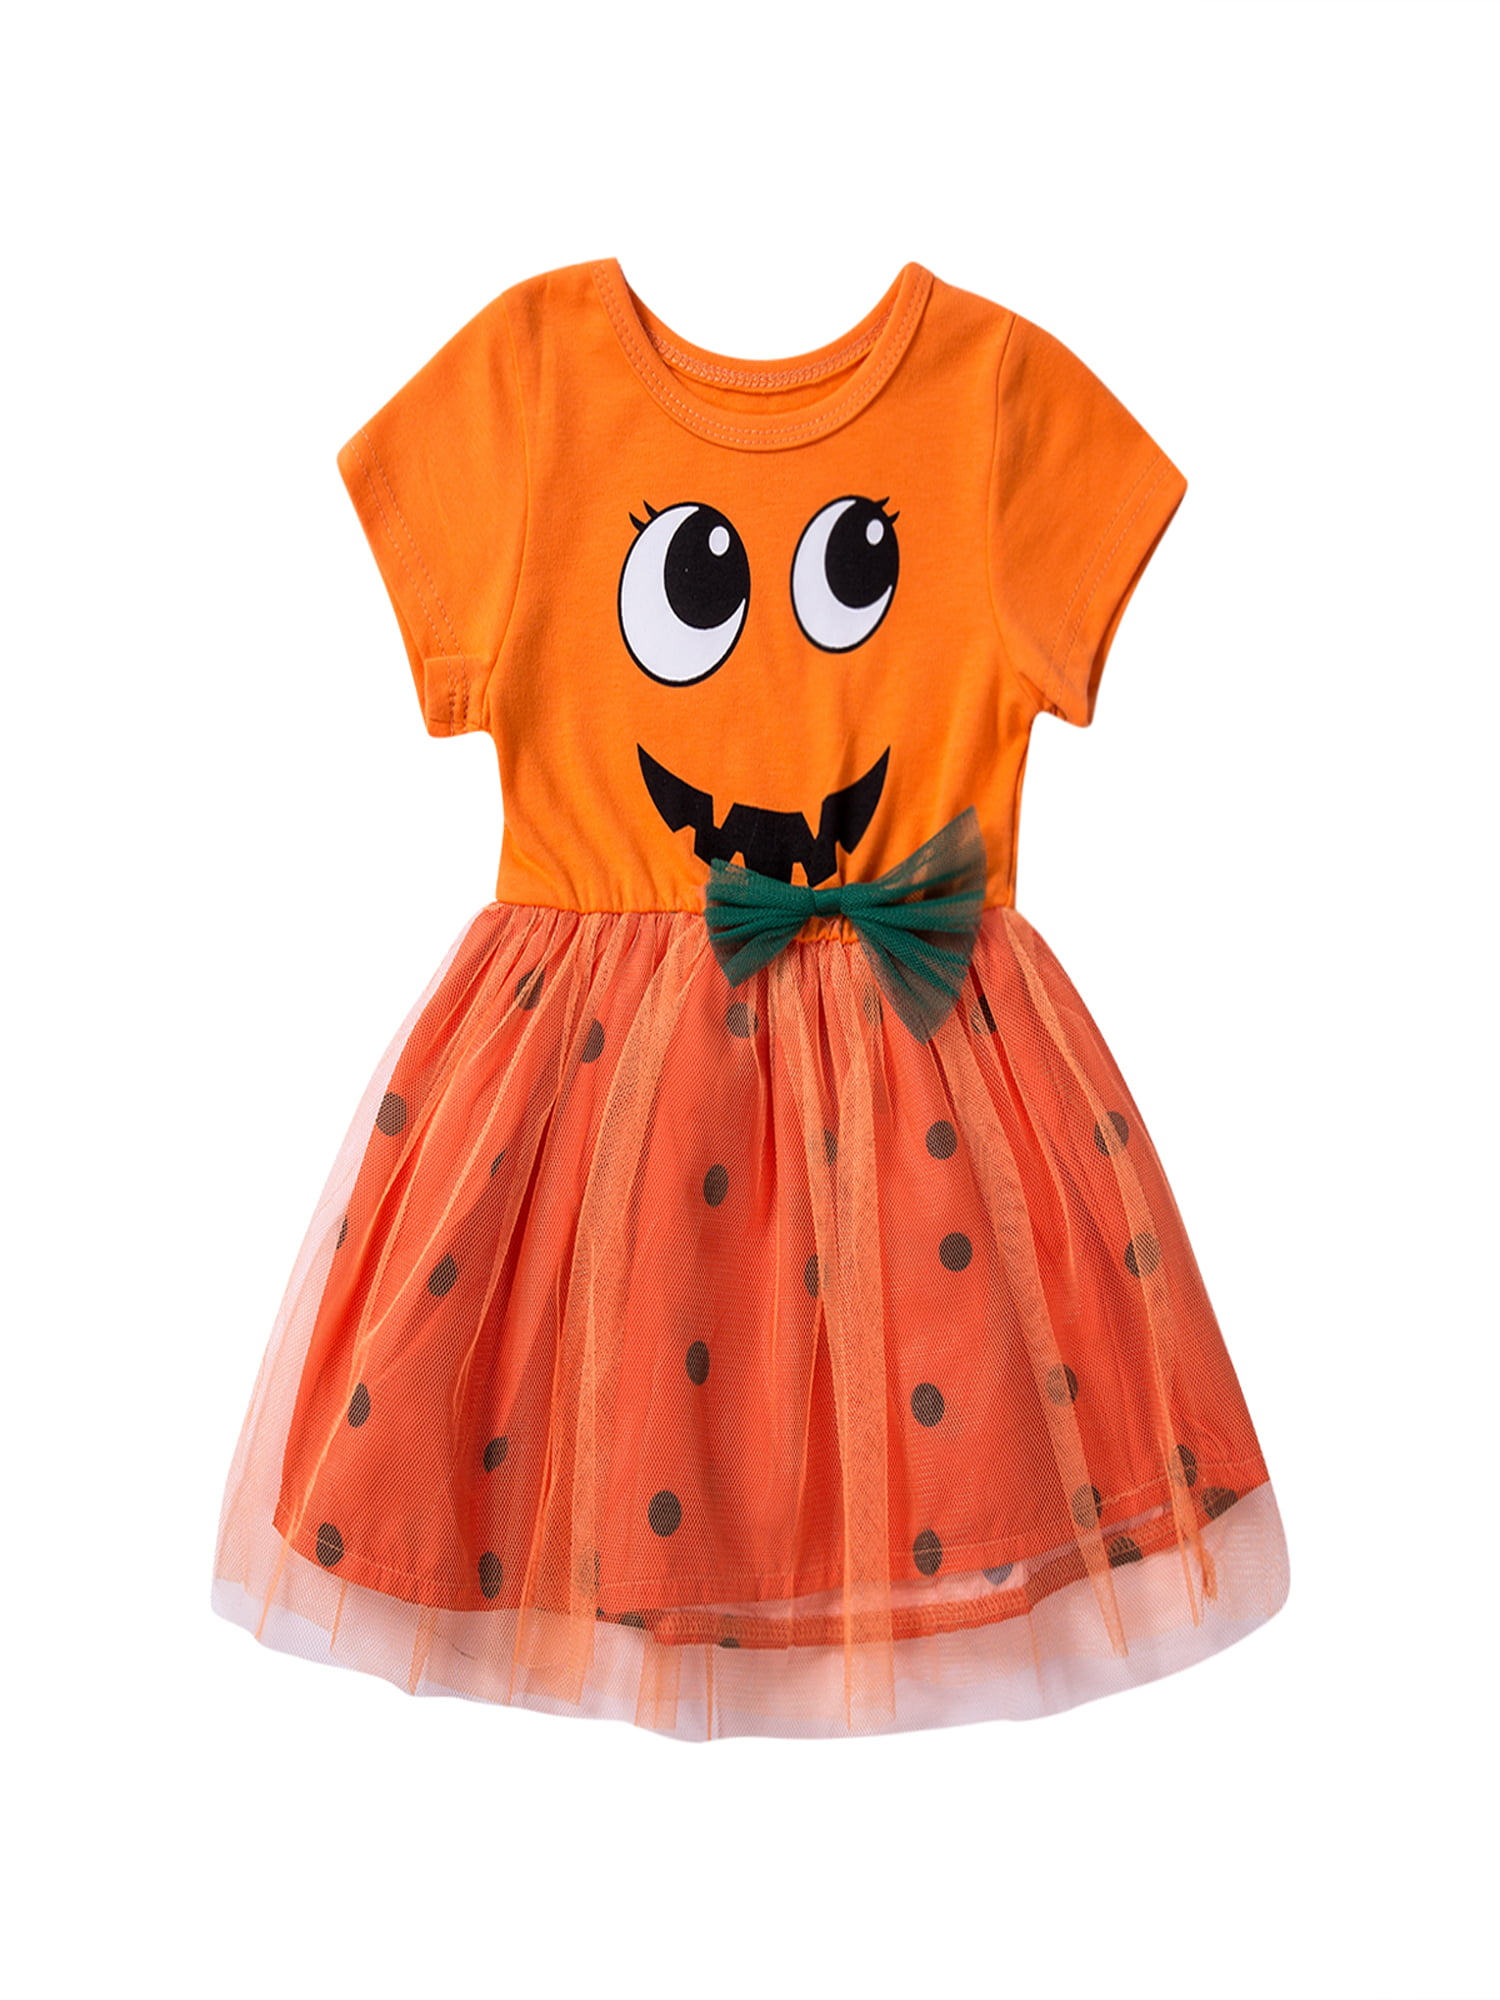 Toddler Baby Girls Dress Outfit Halloween Pumpkin Floral Long Sleeve Patchwork T-Shirt Dresses 